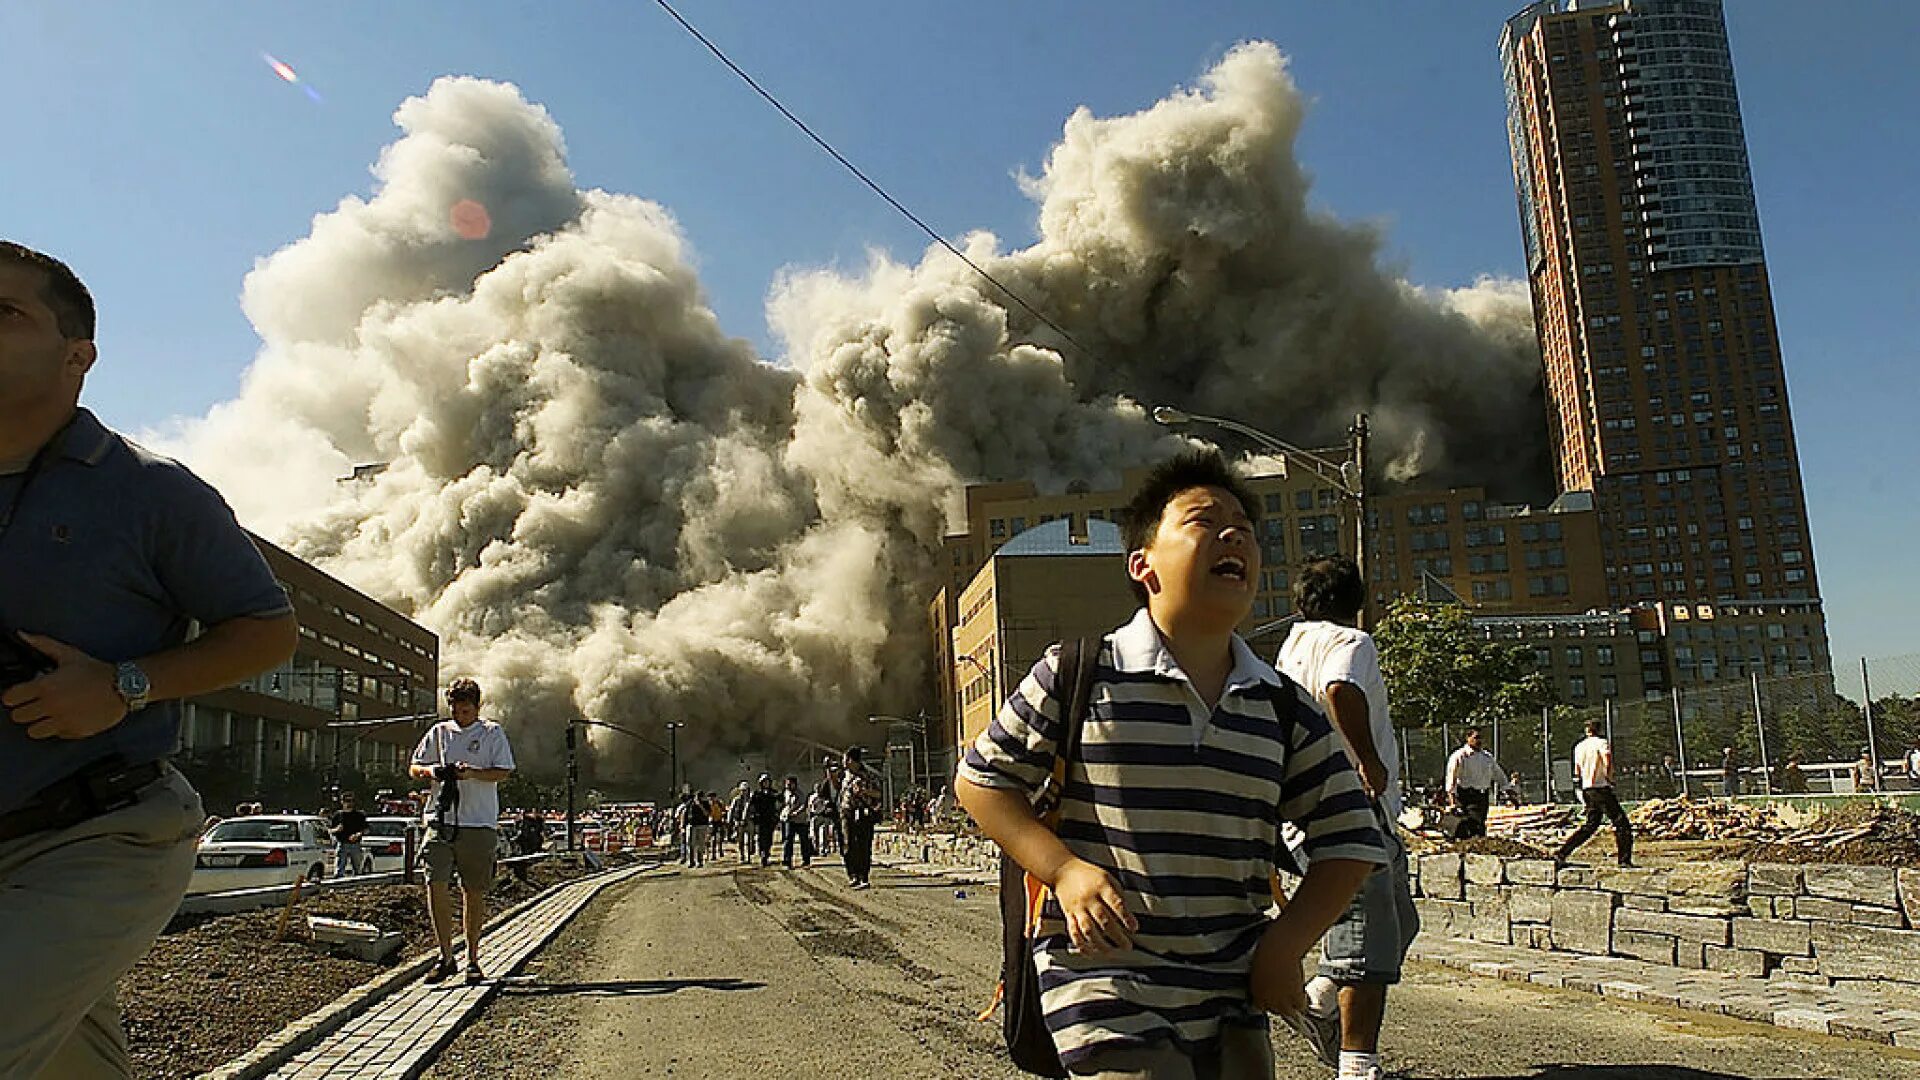 События в мире за сегодня мировые. Башни-Близнецы 11 сентября 2001. 11 Сентября 2001 года террористическая атака на США.